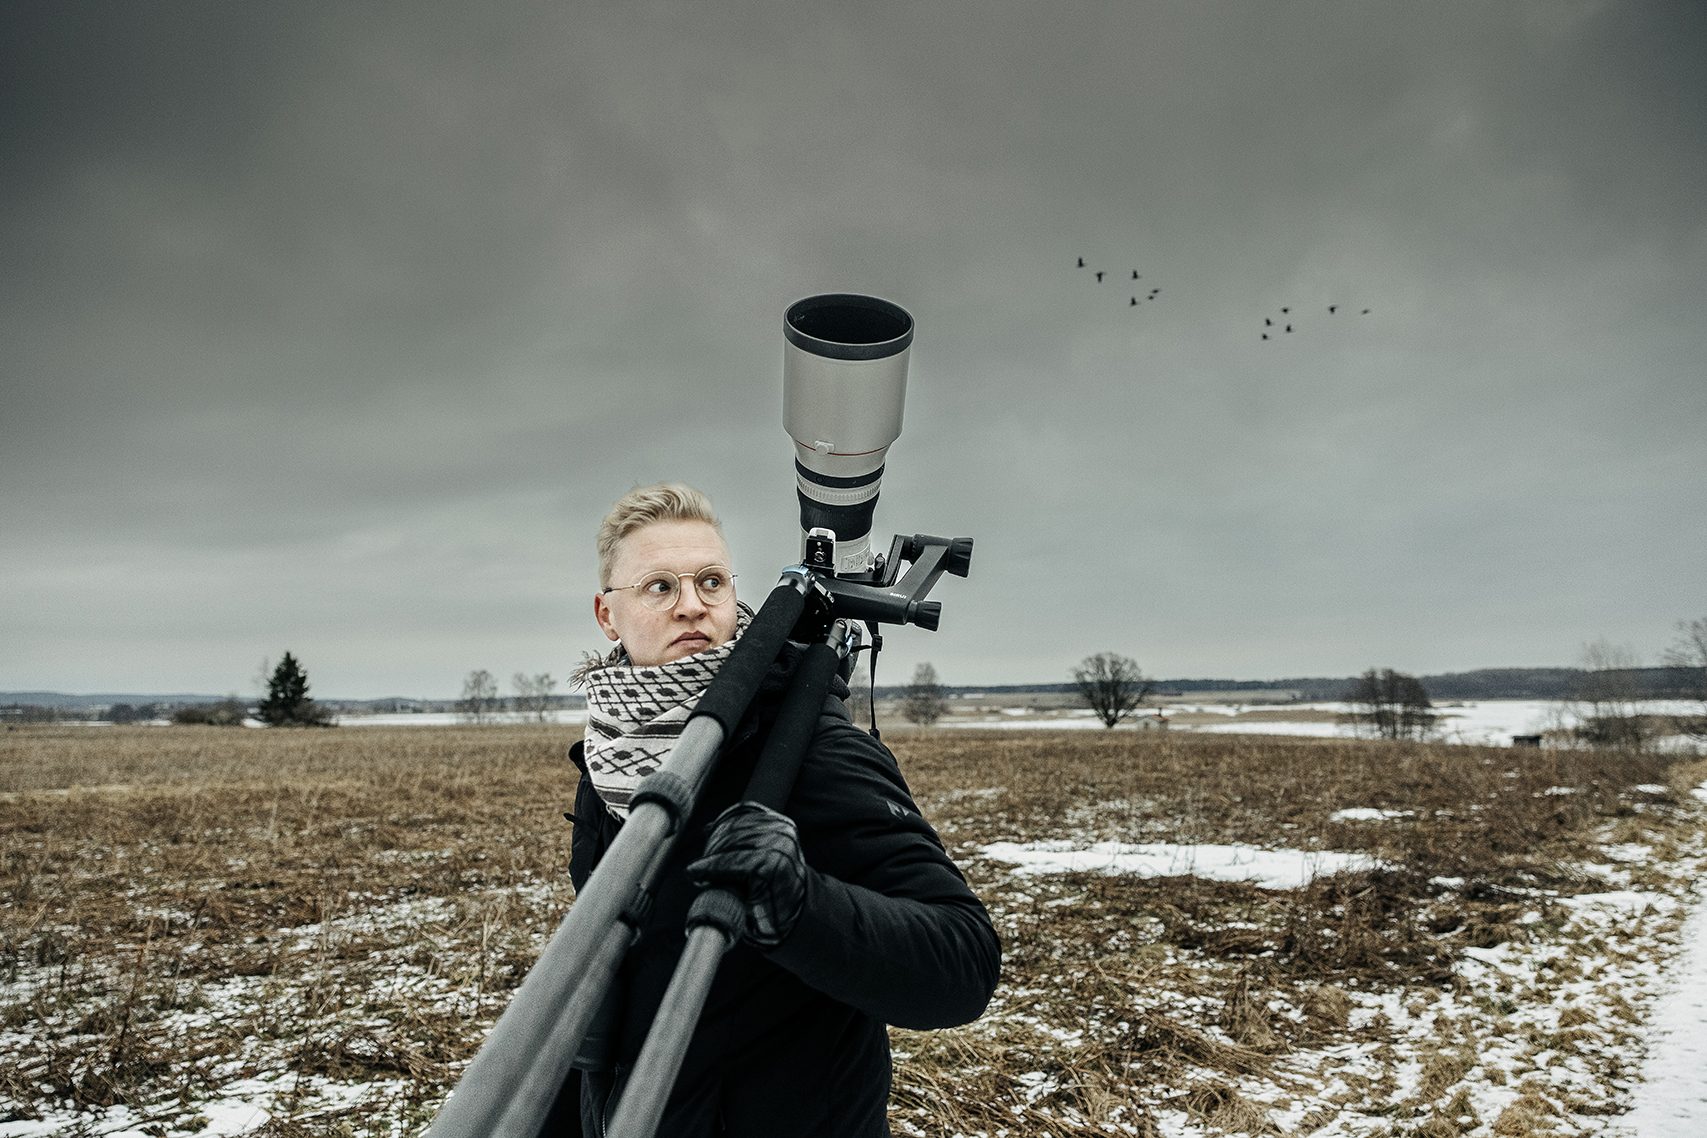 Fotografen Jonas Classon med stativ och kamera med långt teleobjektiv. I bakgrunden sjön Tysslingen och en flock fåglar.